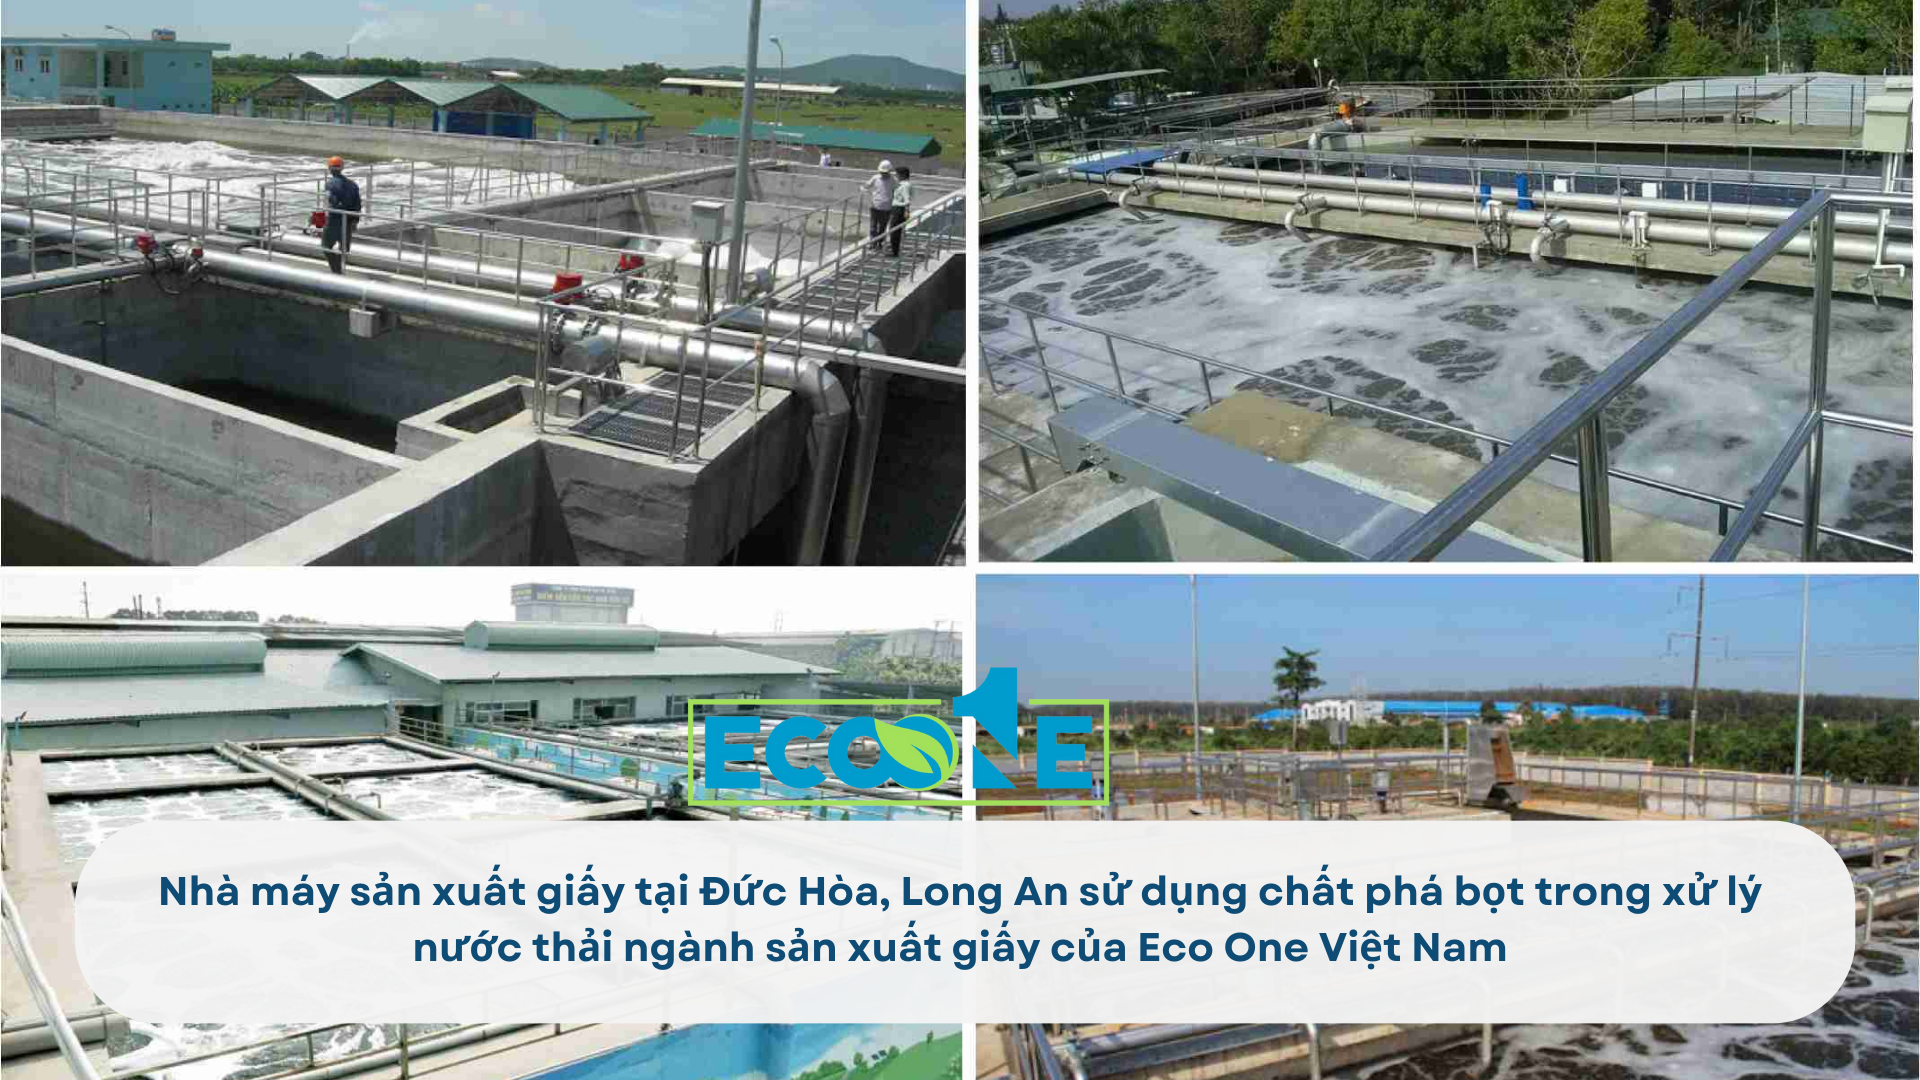 Nhà máy sản xuất giấy tại Đức Hòa, Long An sử dụng chất phá bọt trong xử lý nước thải ngành sản xuất giấy của Eco One Việt Nam